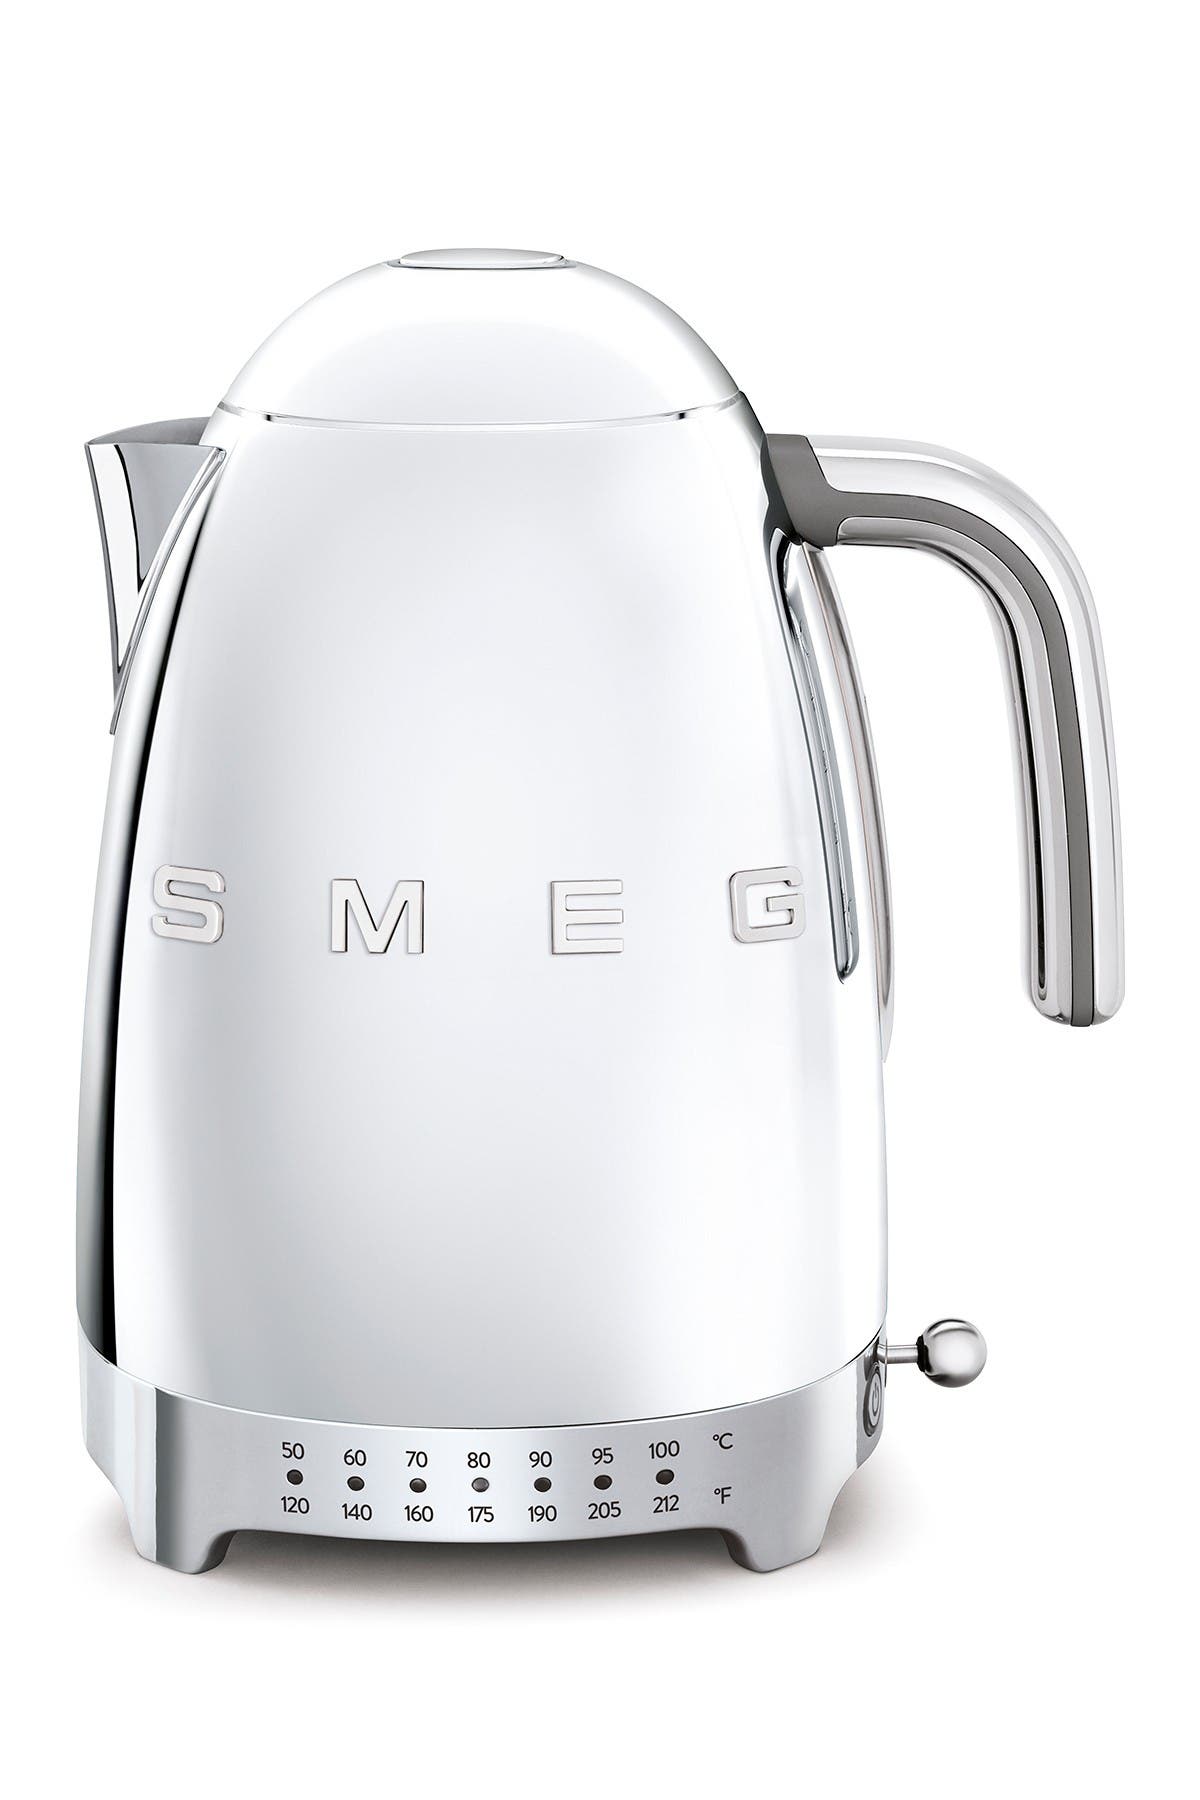 smeg 3d logo kettle